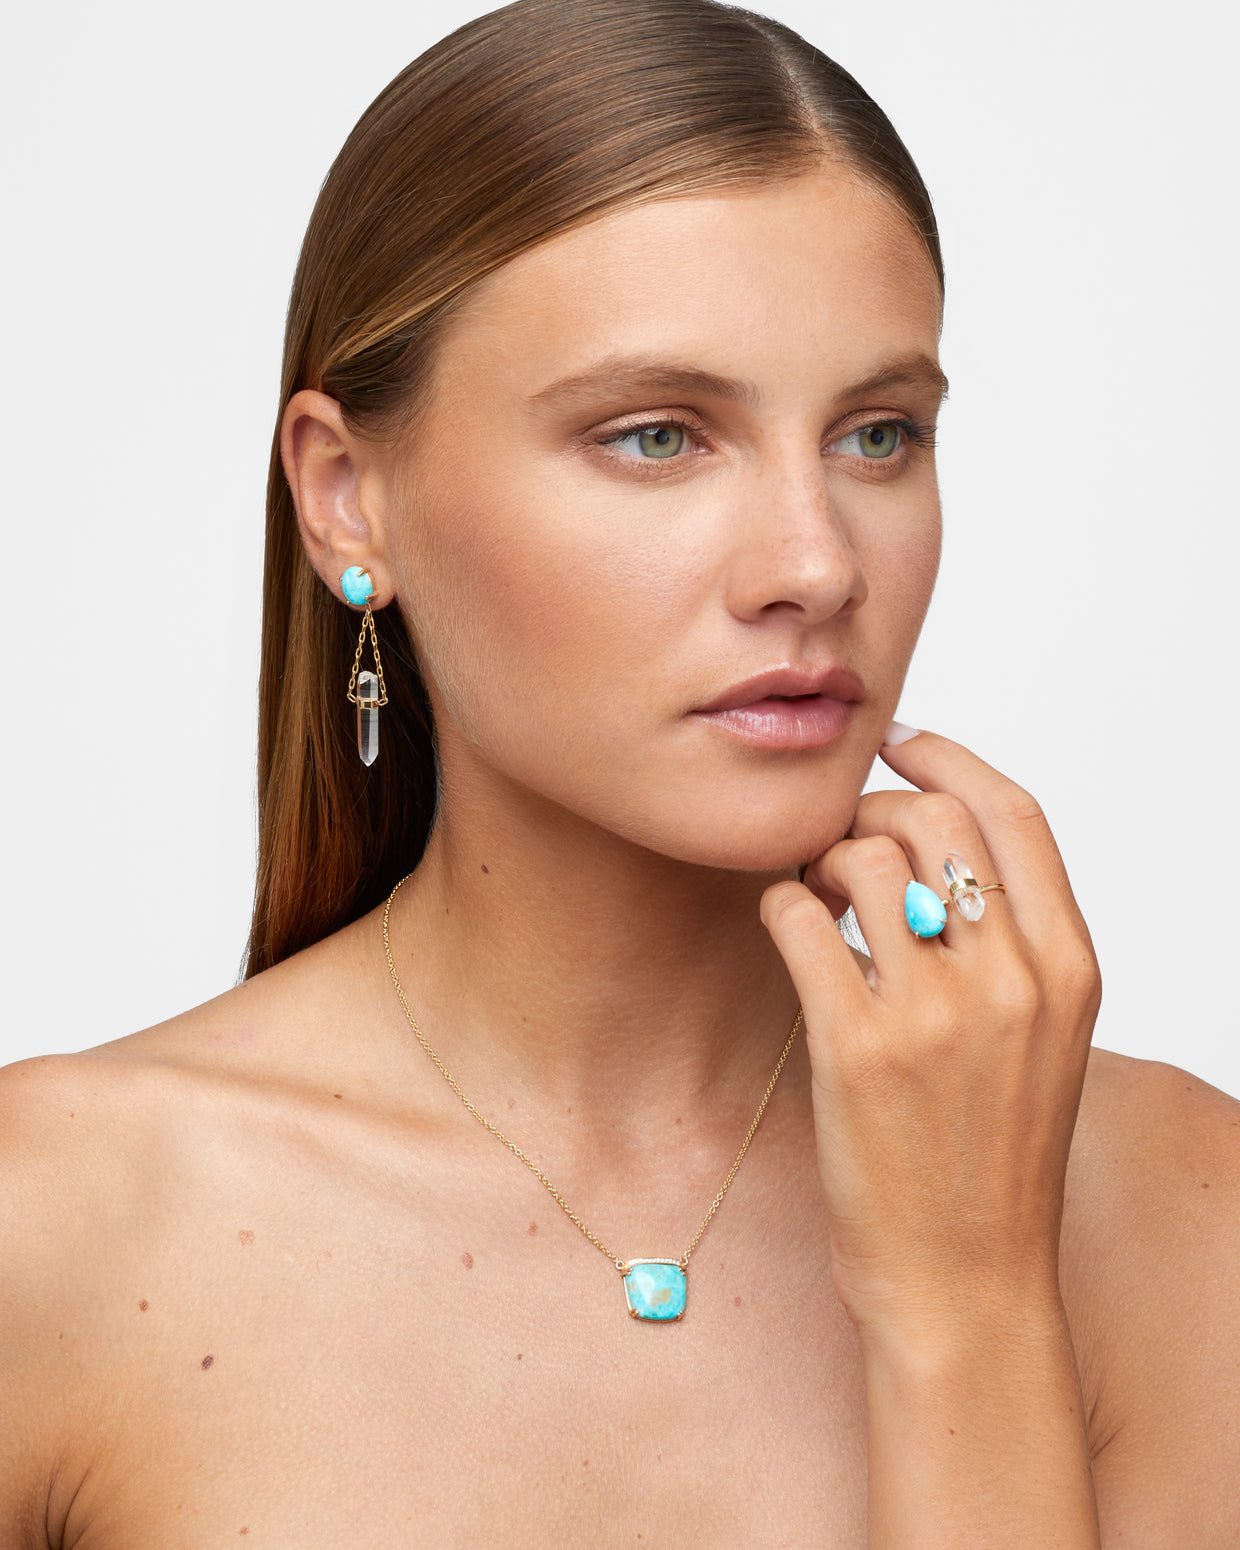 Nevada Mona Lisa Turquoise Crystal Drop Earrings